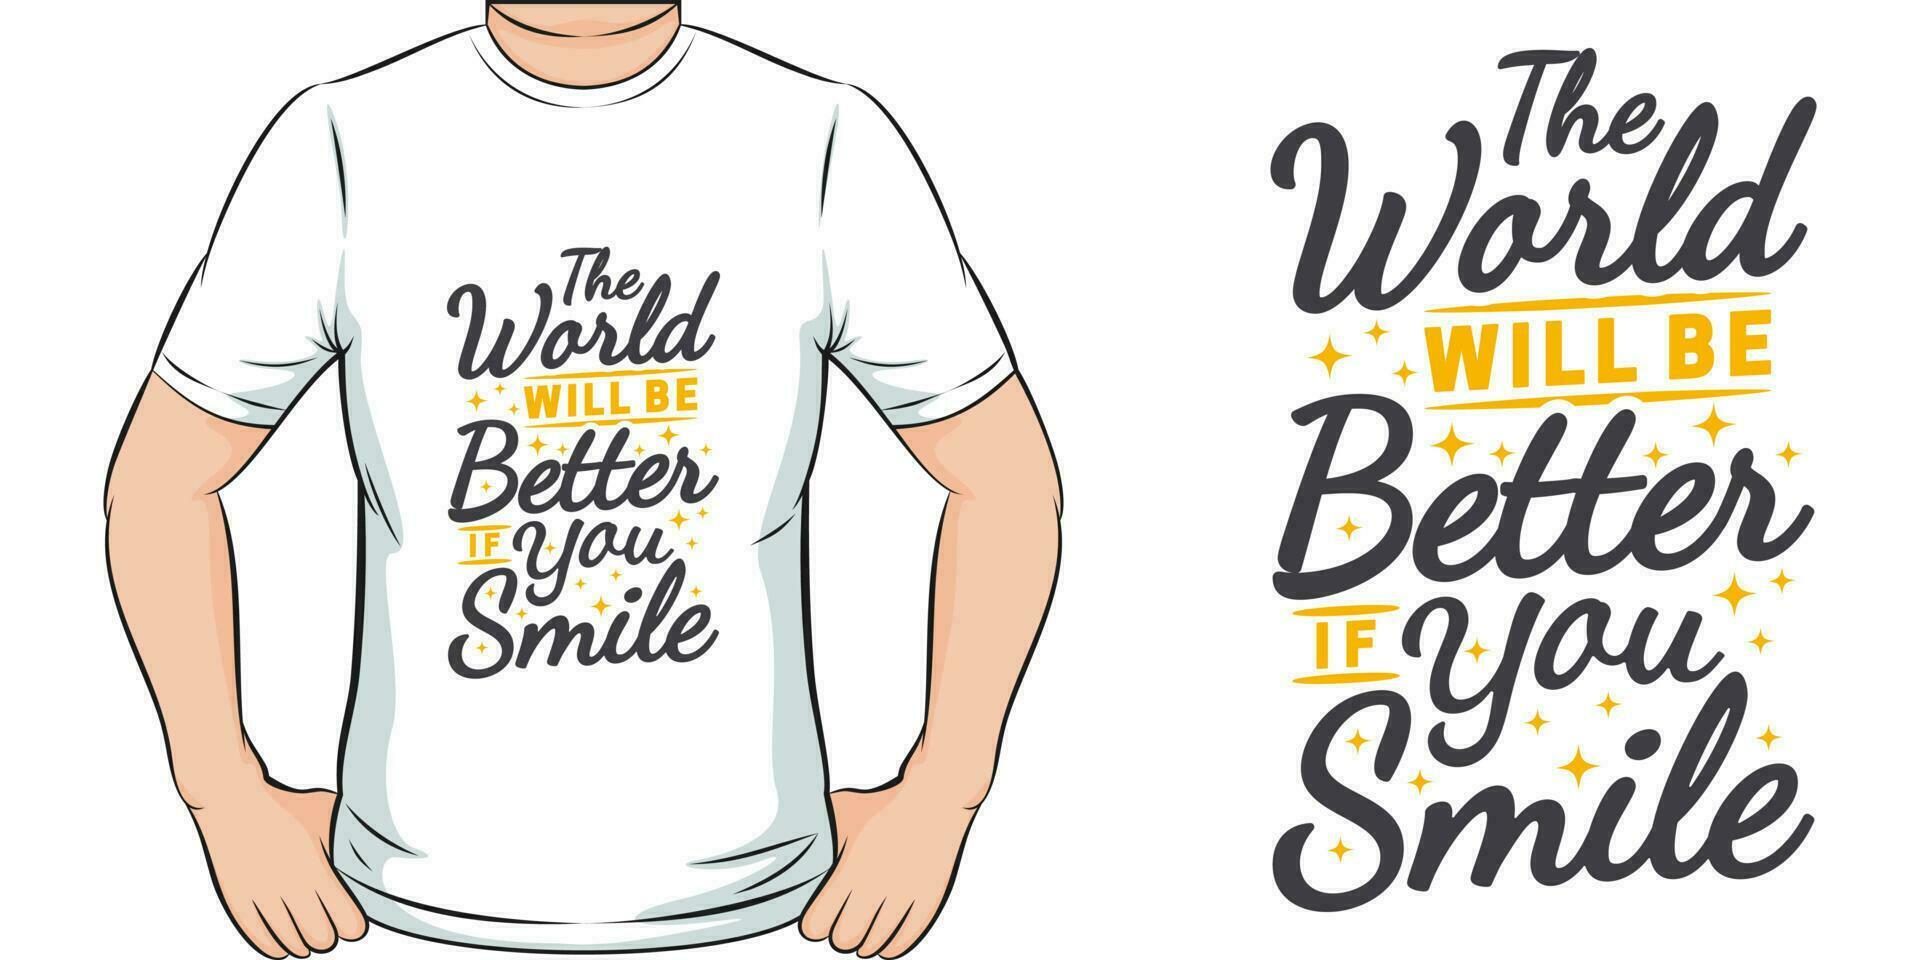 le monde volonté être mieux si vous sourire, de motivation citation T-shirt conception. vecteur